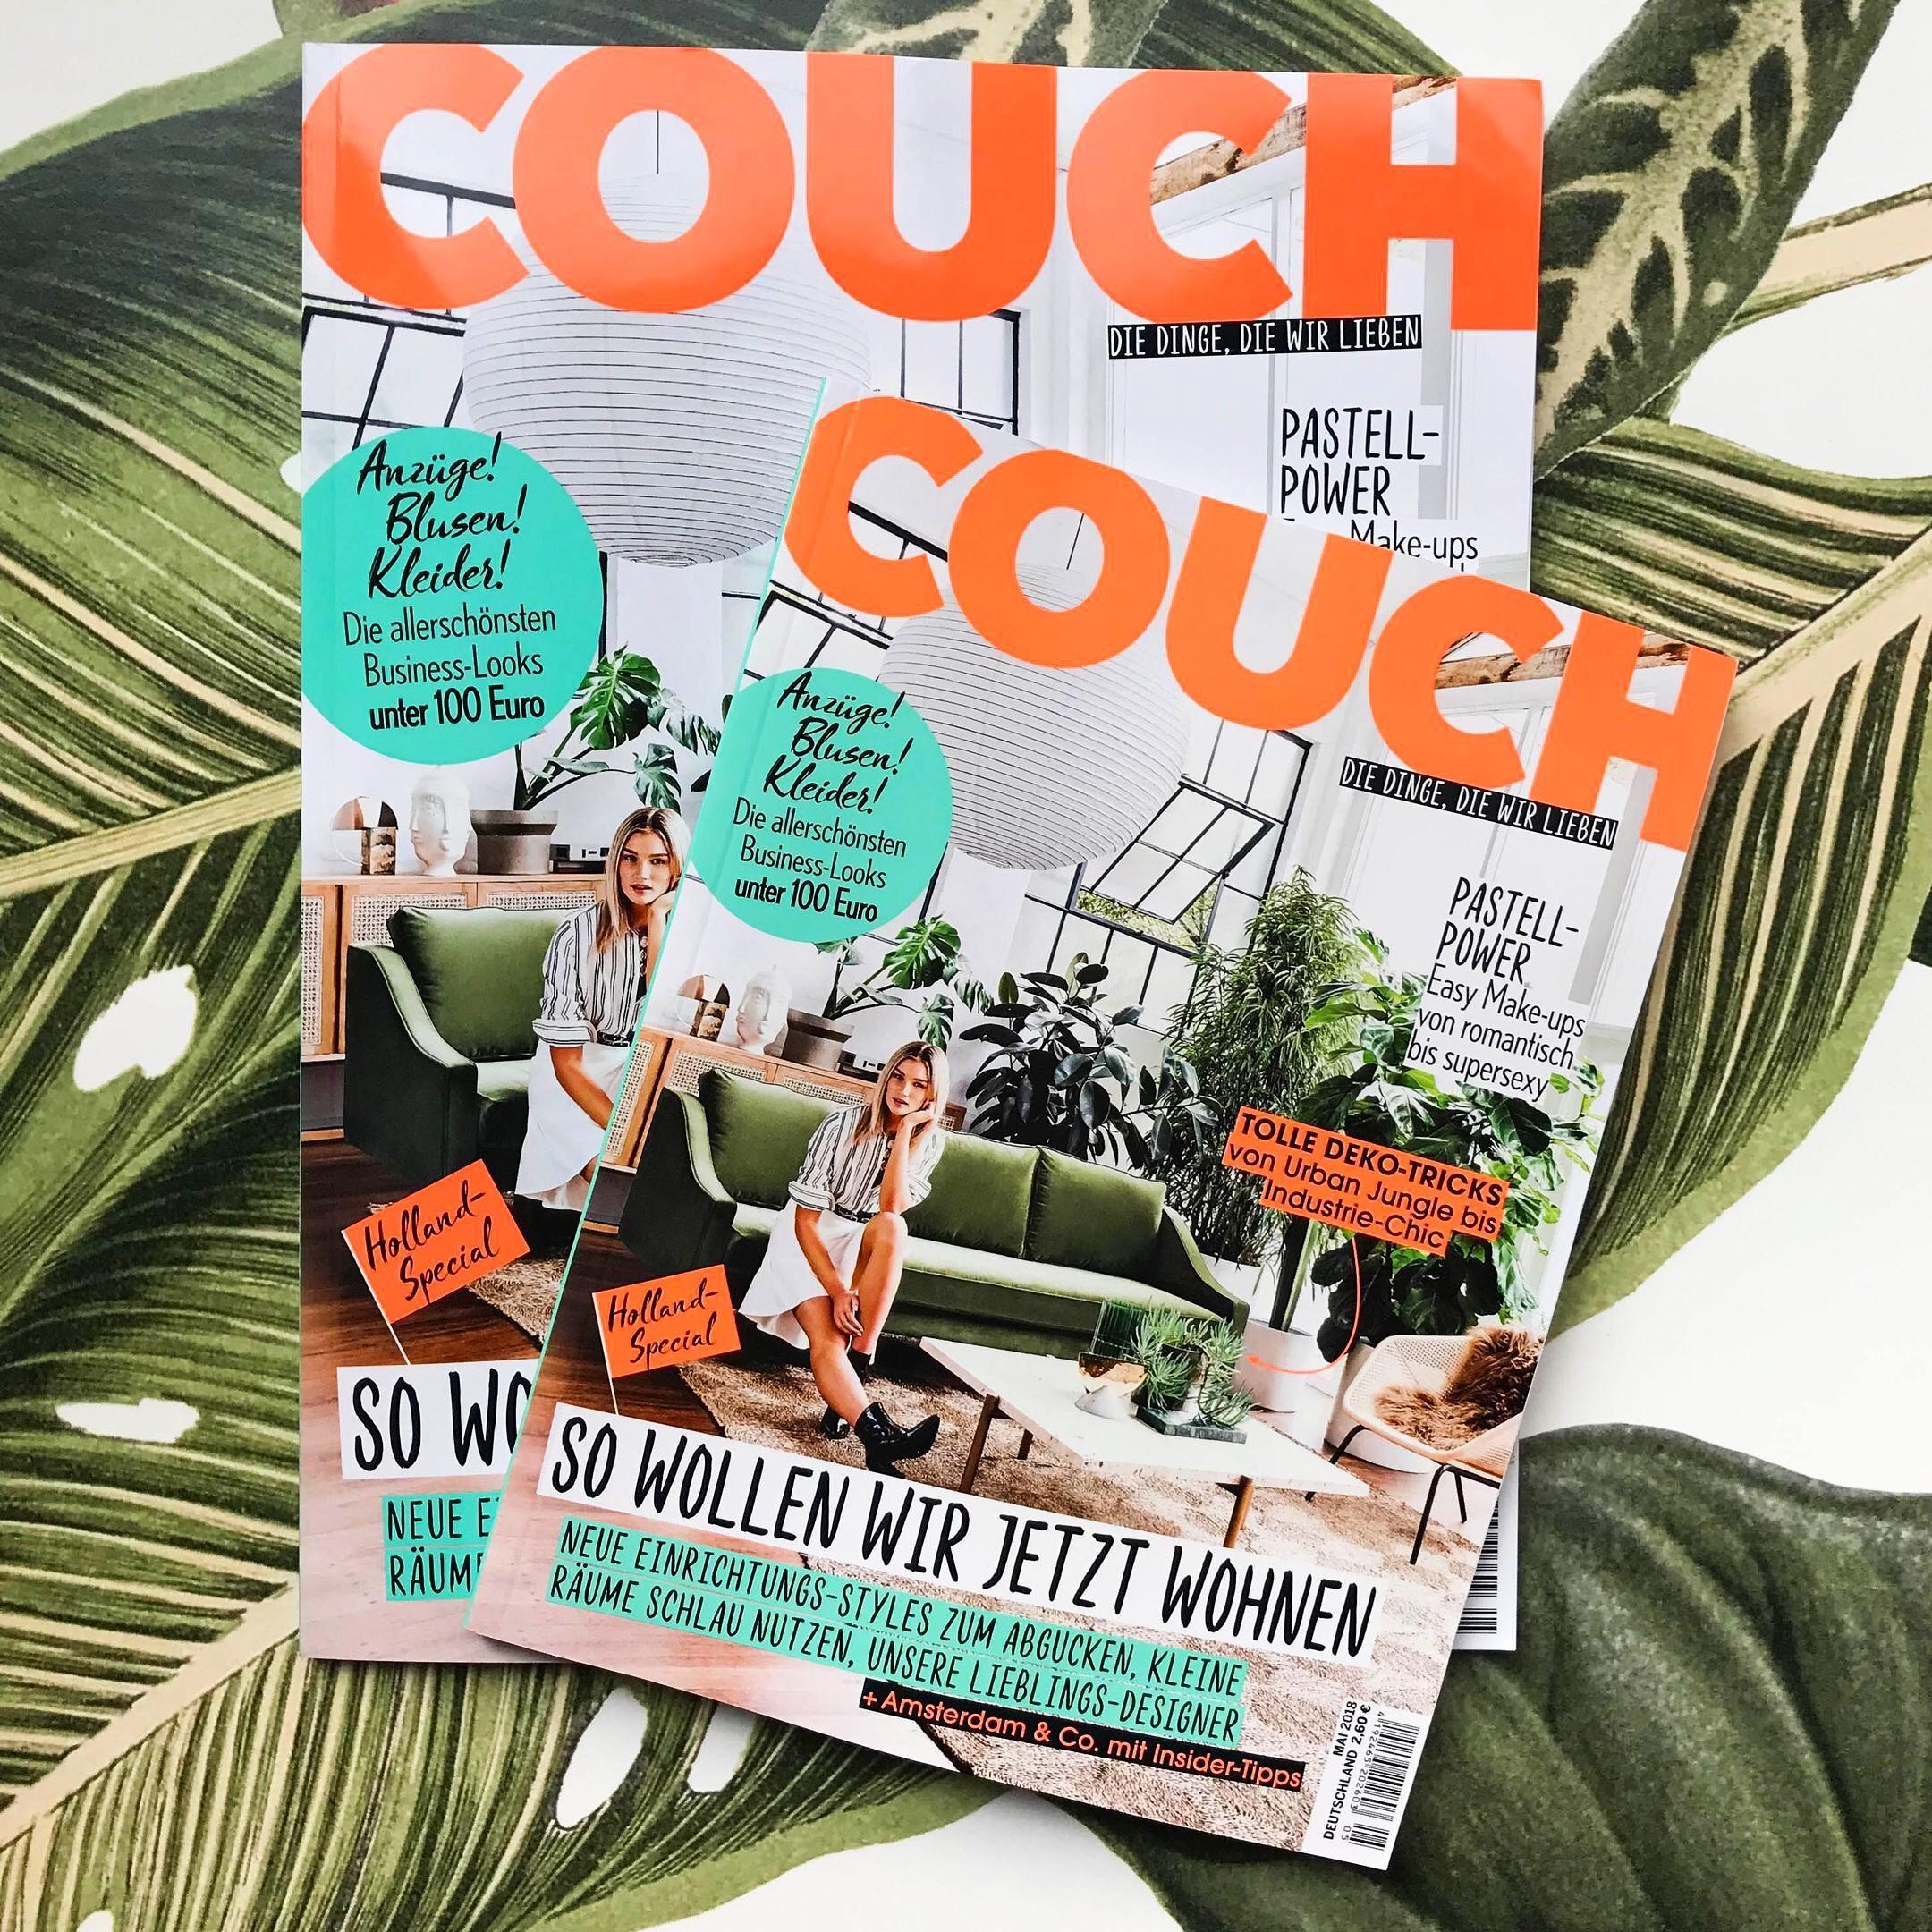 Die neue COUCH ist da! 💕 Mit großem Holland-Special und schlauen Ideen für kleine Räume.
#couchmagazin #couchabo